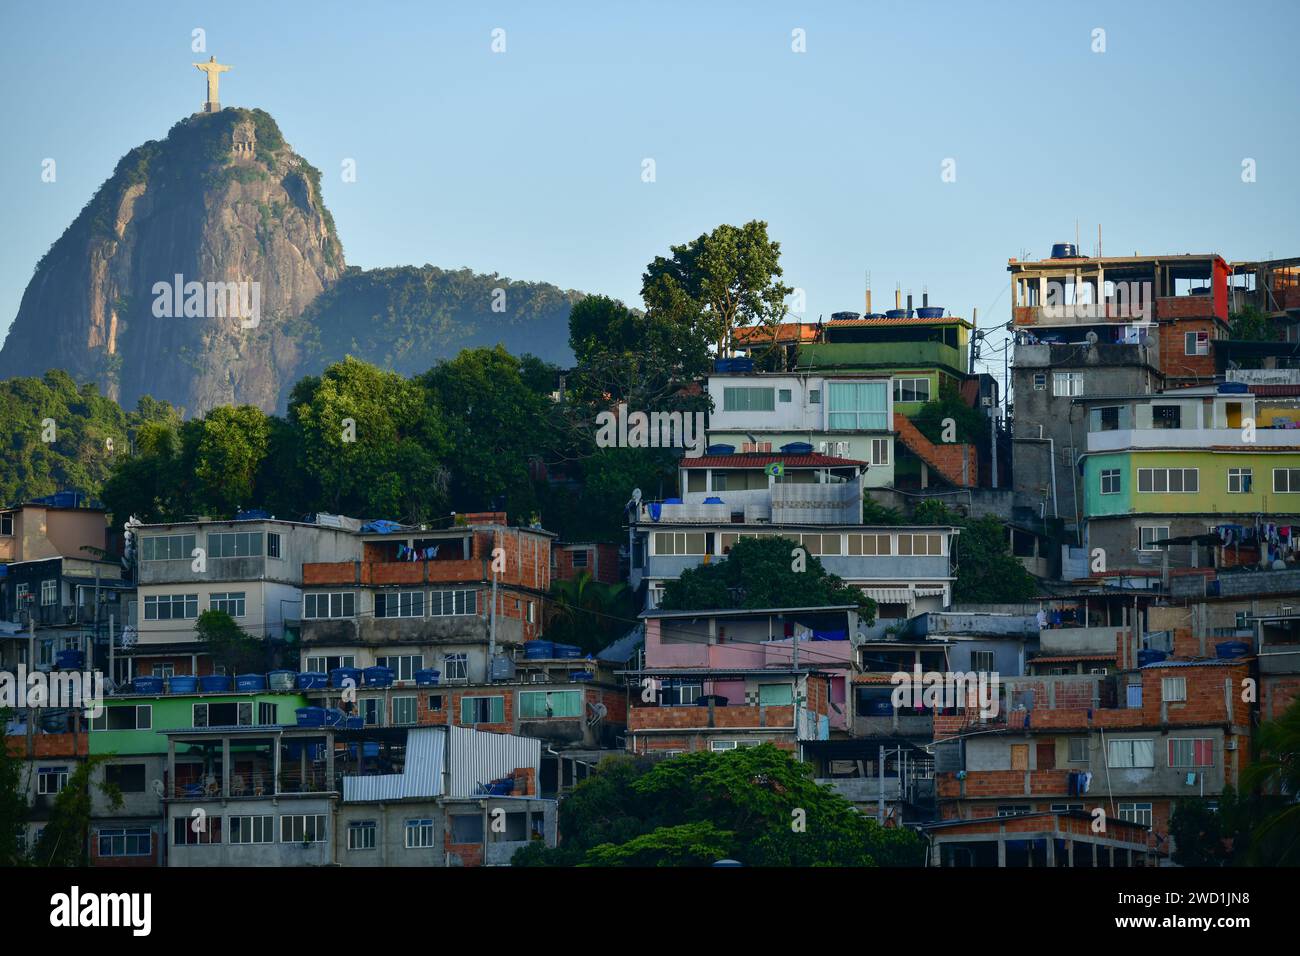 Favela de Tabaraja mit dem Berg Corcovado und der Statue von Christus dem Erlöser im Hintergrund, Rio de Janeiro, Brasilien Stockfoto